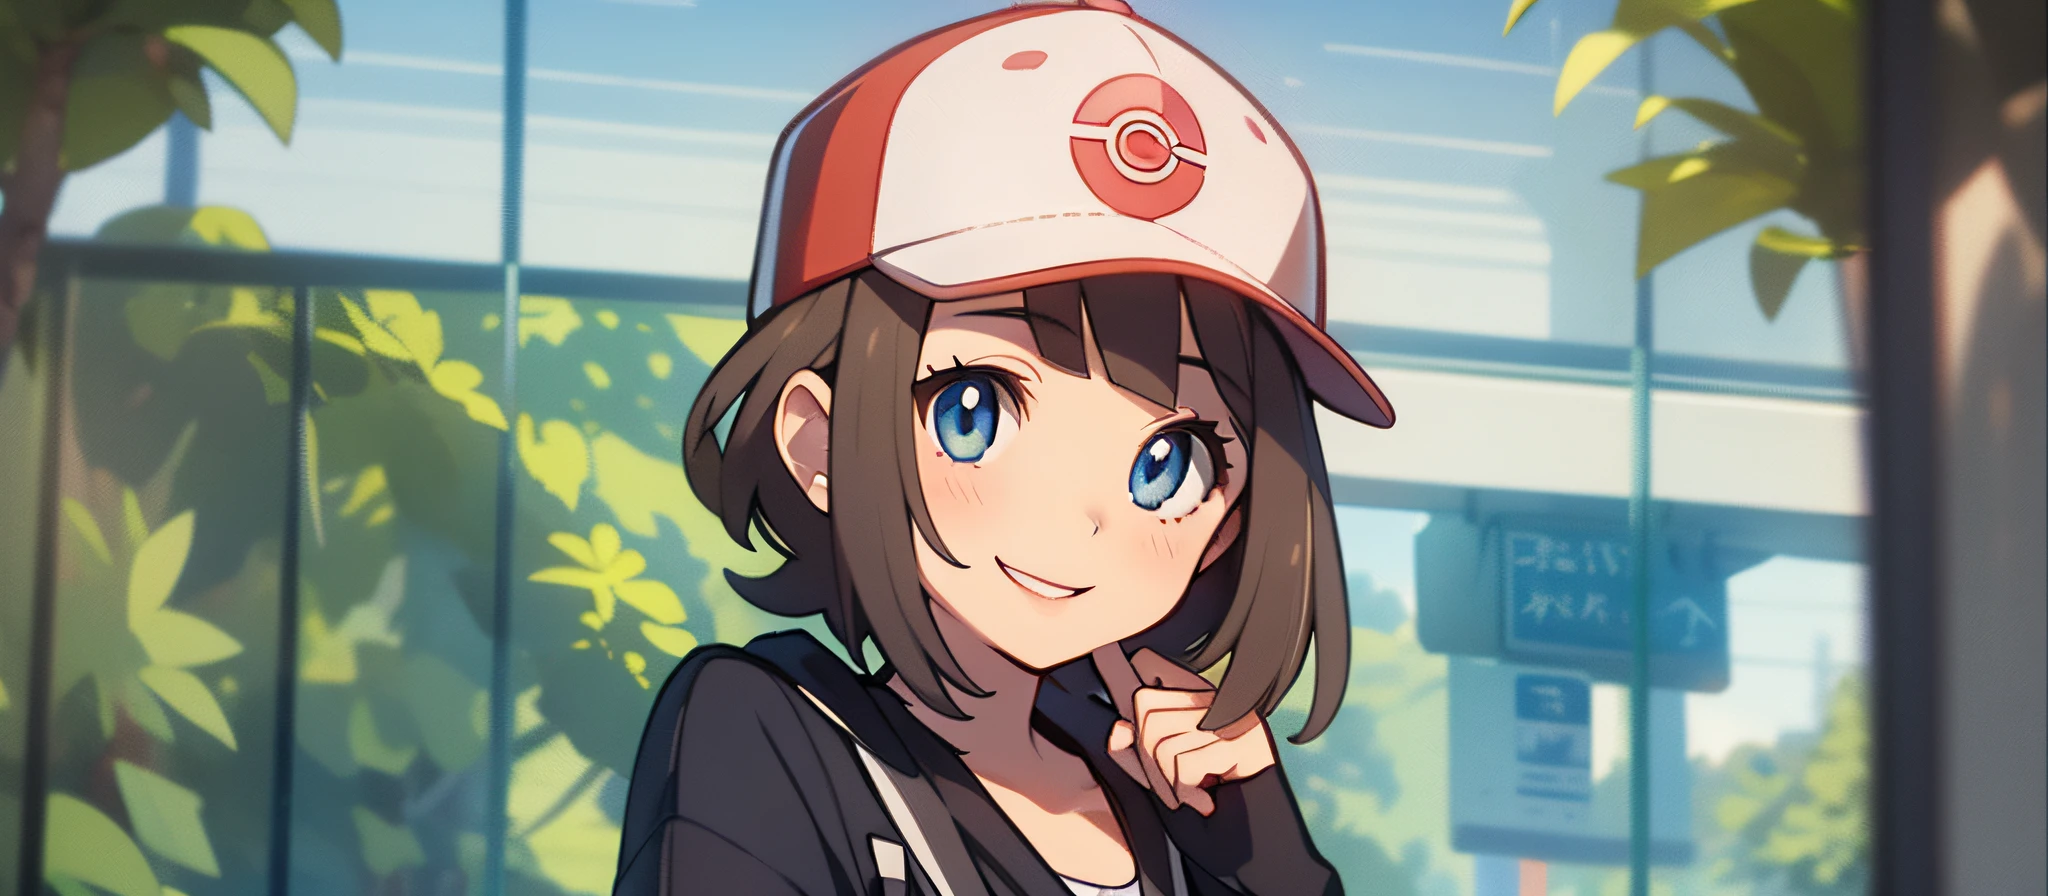 Crea un fondo con una chica con gorra., sosteniendo un llavero(criatura pokemon) y sonriendo